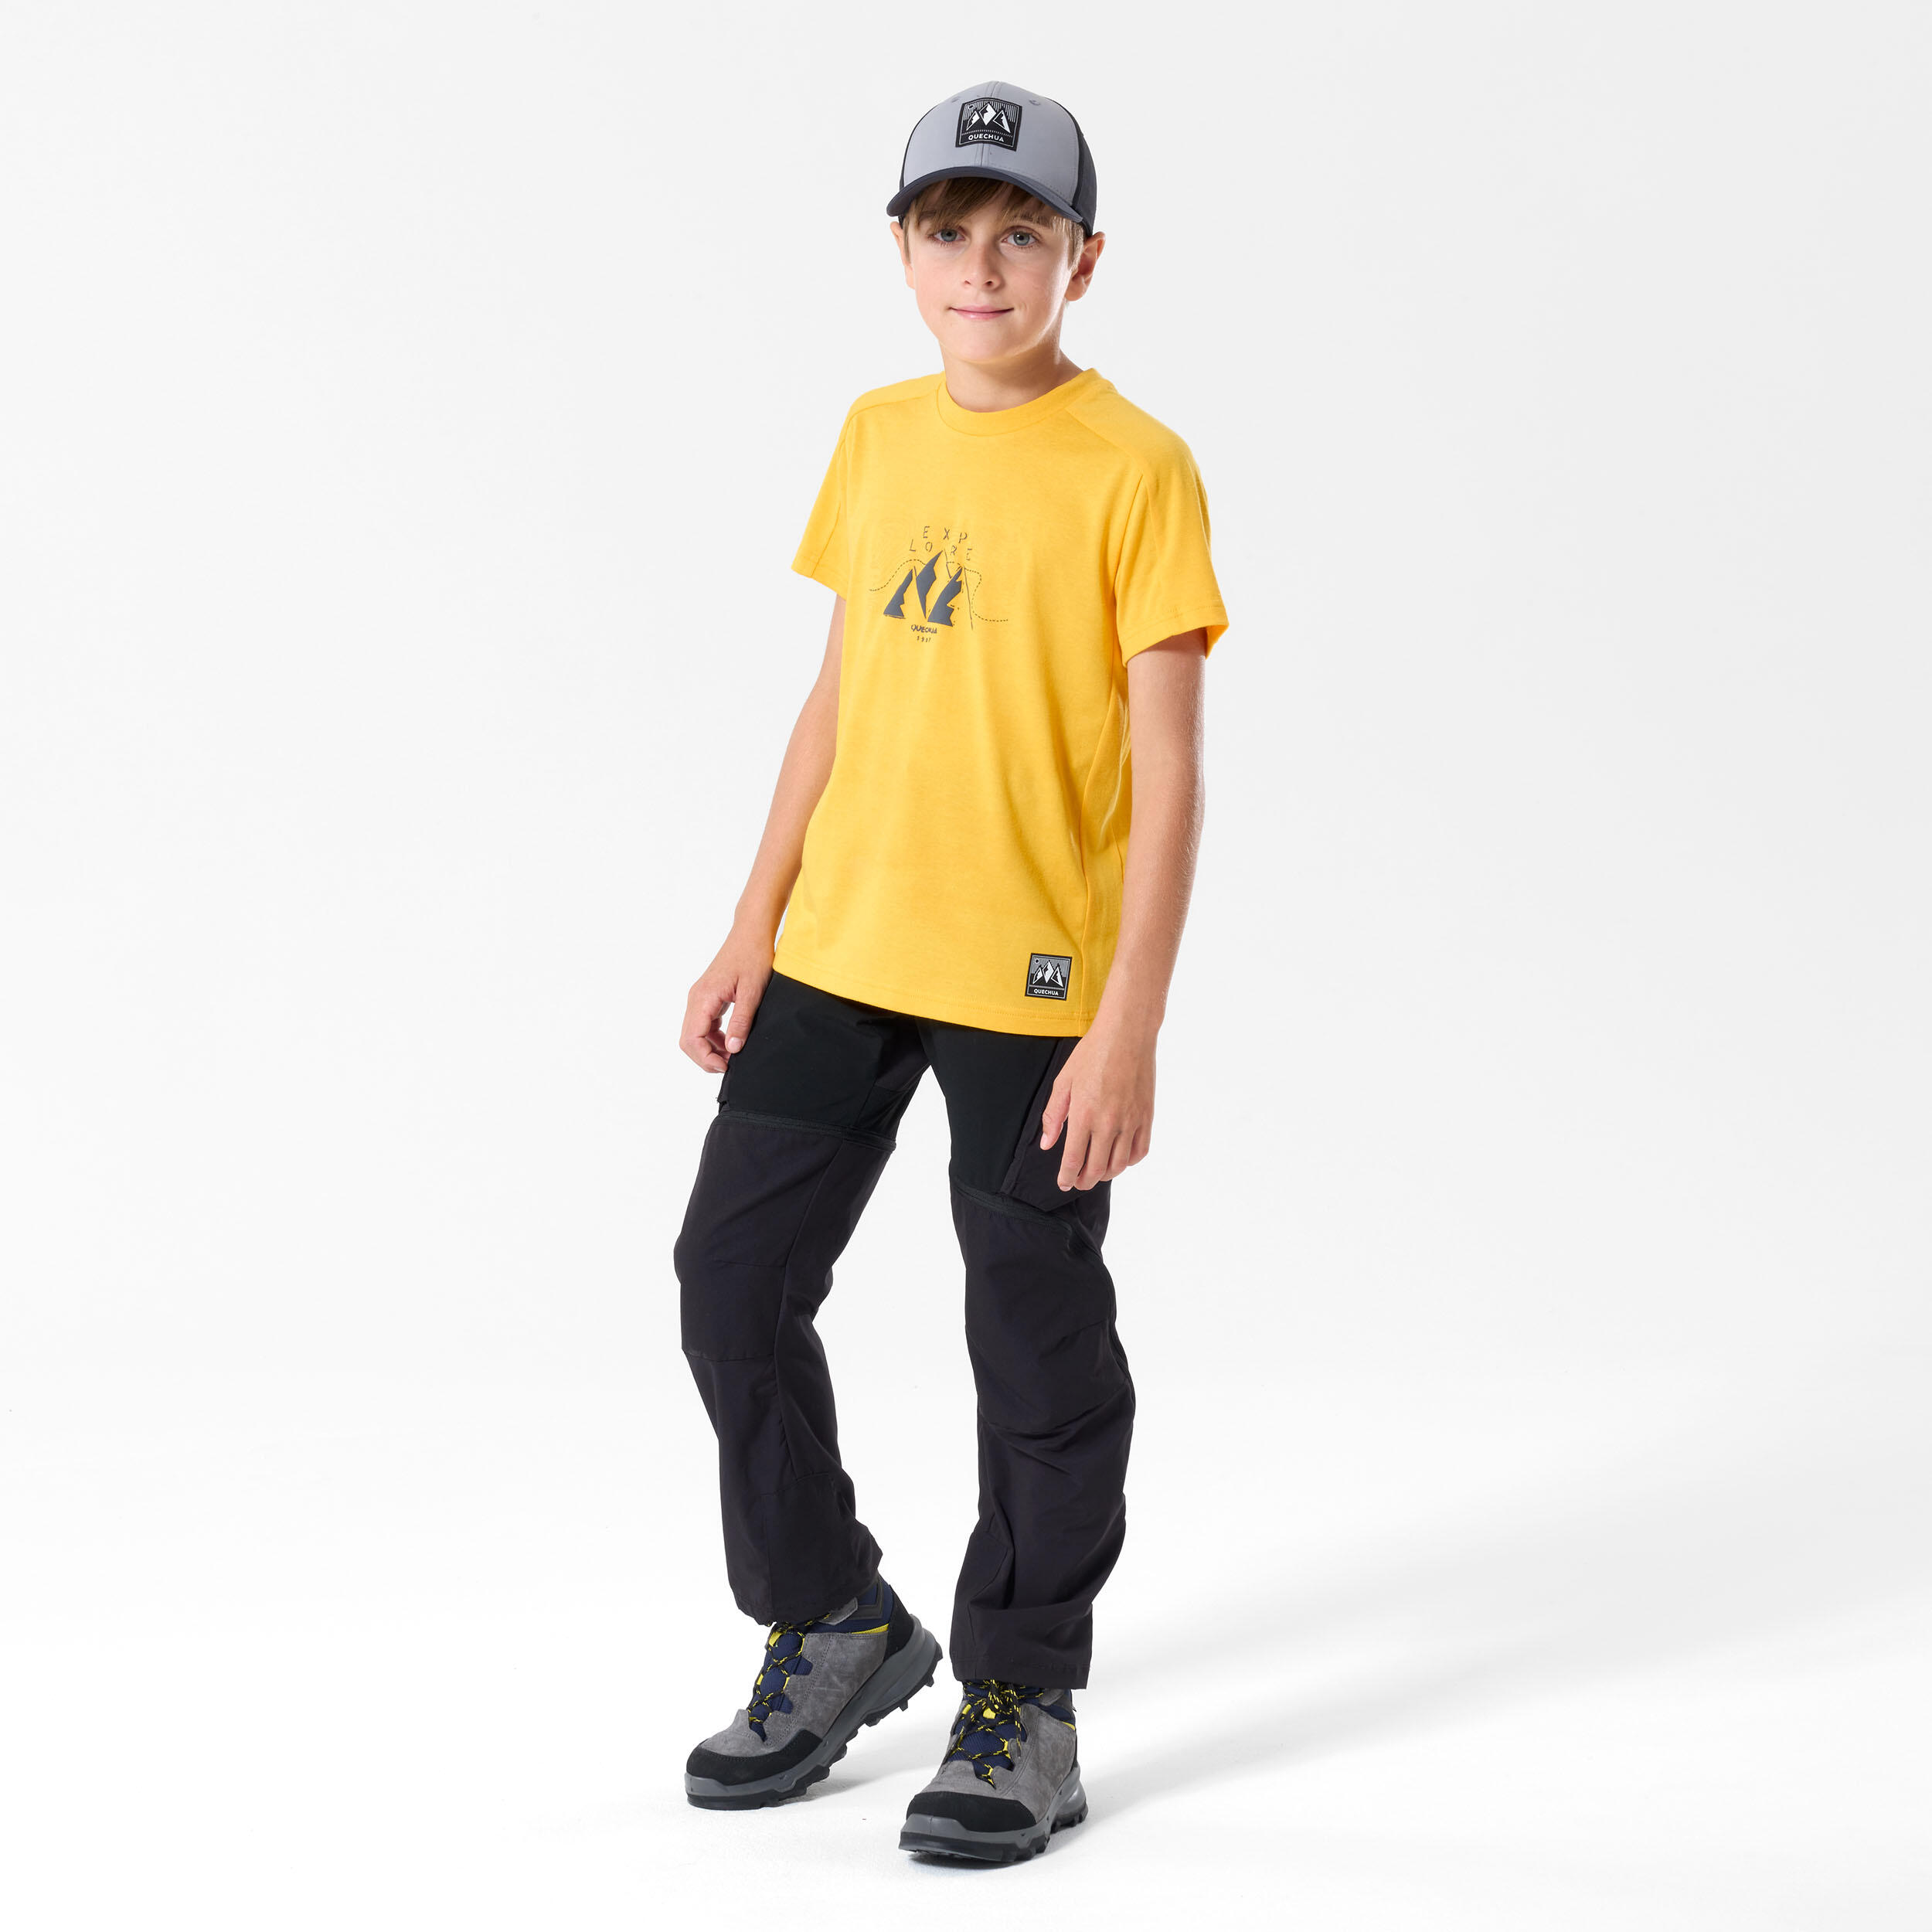 Child's hiking T-Shirt - MH100 yellow - 7-15 years 2/5